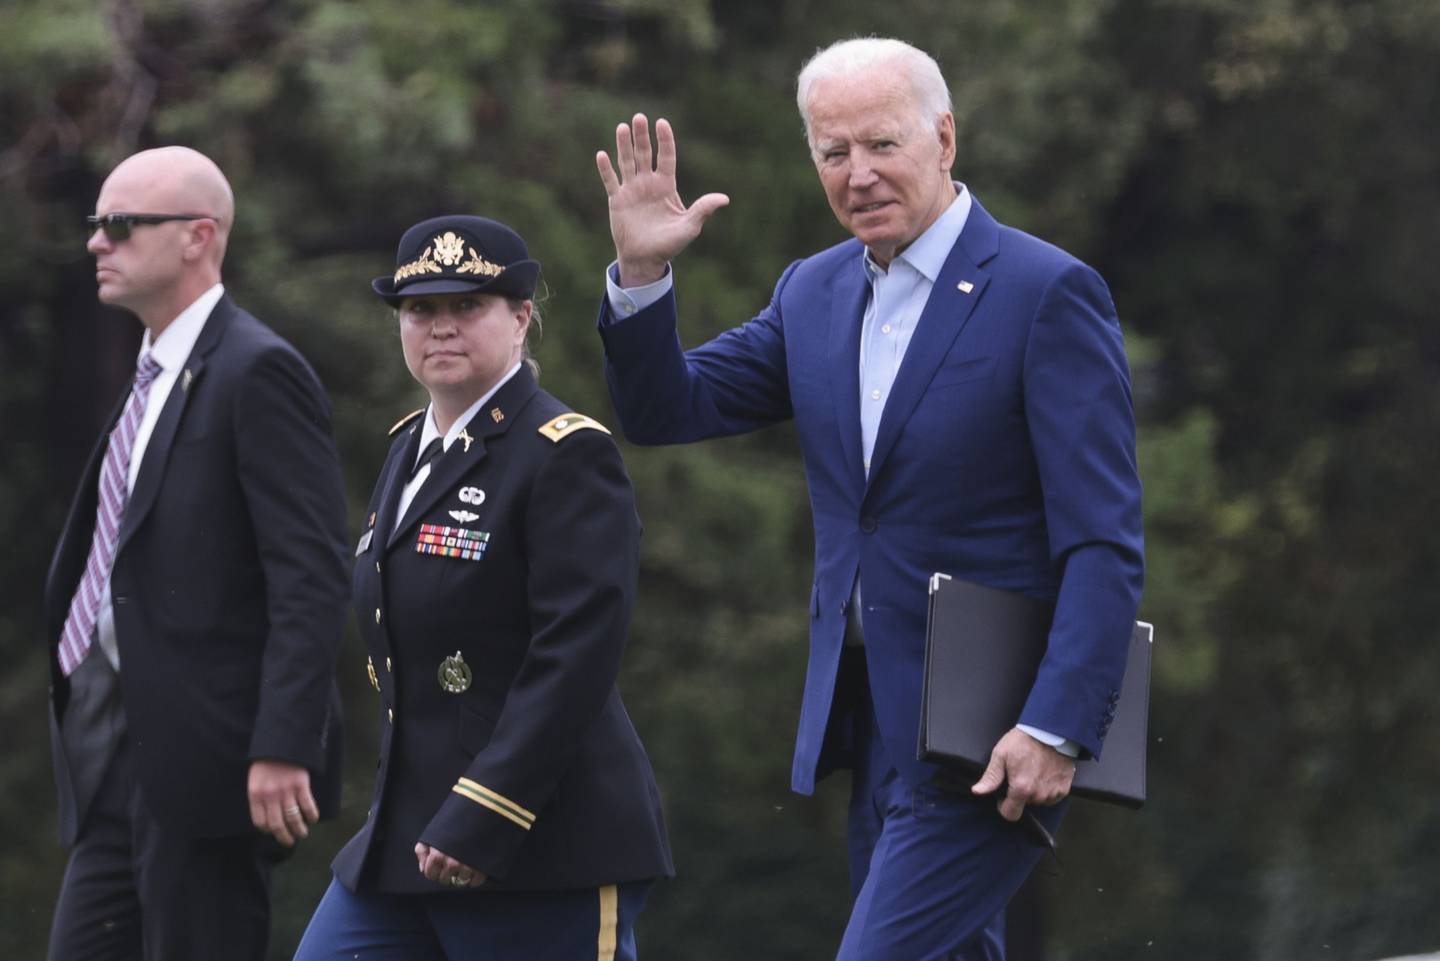 El presidente estadounidense Joe Biden llega a Fort Lesley J. McNair en Washington, DC, EE.UU., el lunes 16 de agosto de 2021. Los líderes talibanes marcharon hacia Kabul el domingo, preparándose para tomar el control total de Afganistán dos décadas después de que fueron destituidos por EE. UU. militar. Fotógrafo: Oliver Contreras / Sipa / Bloombergdfd